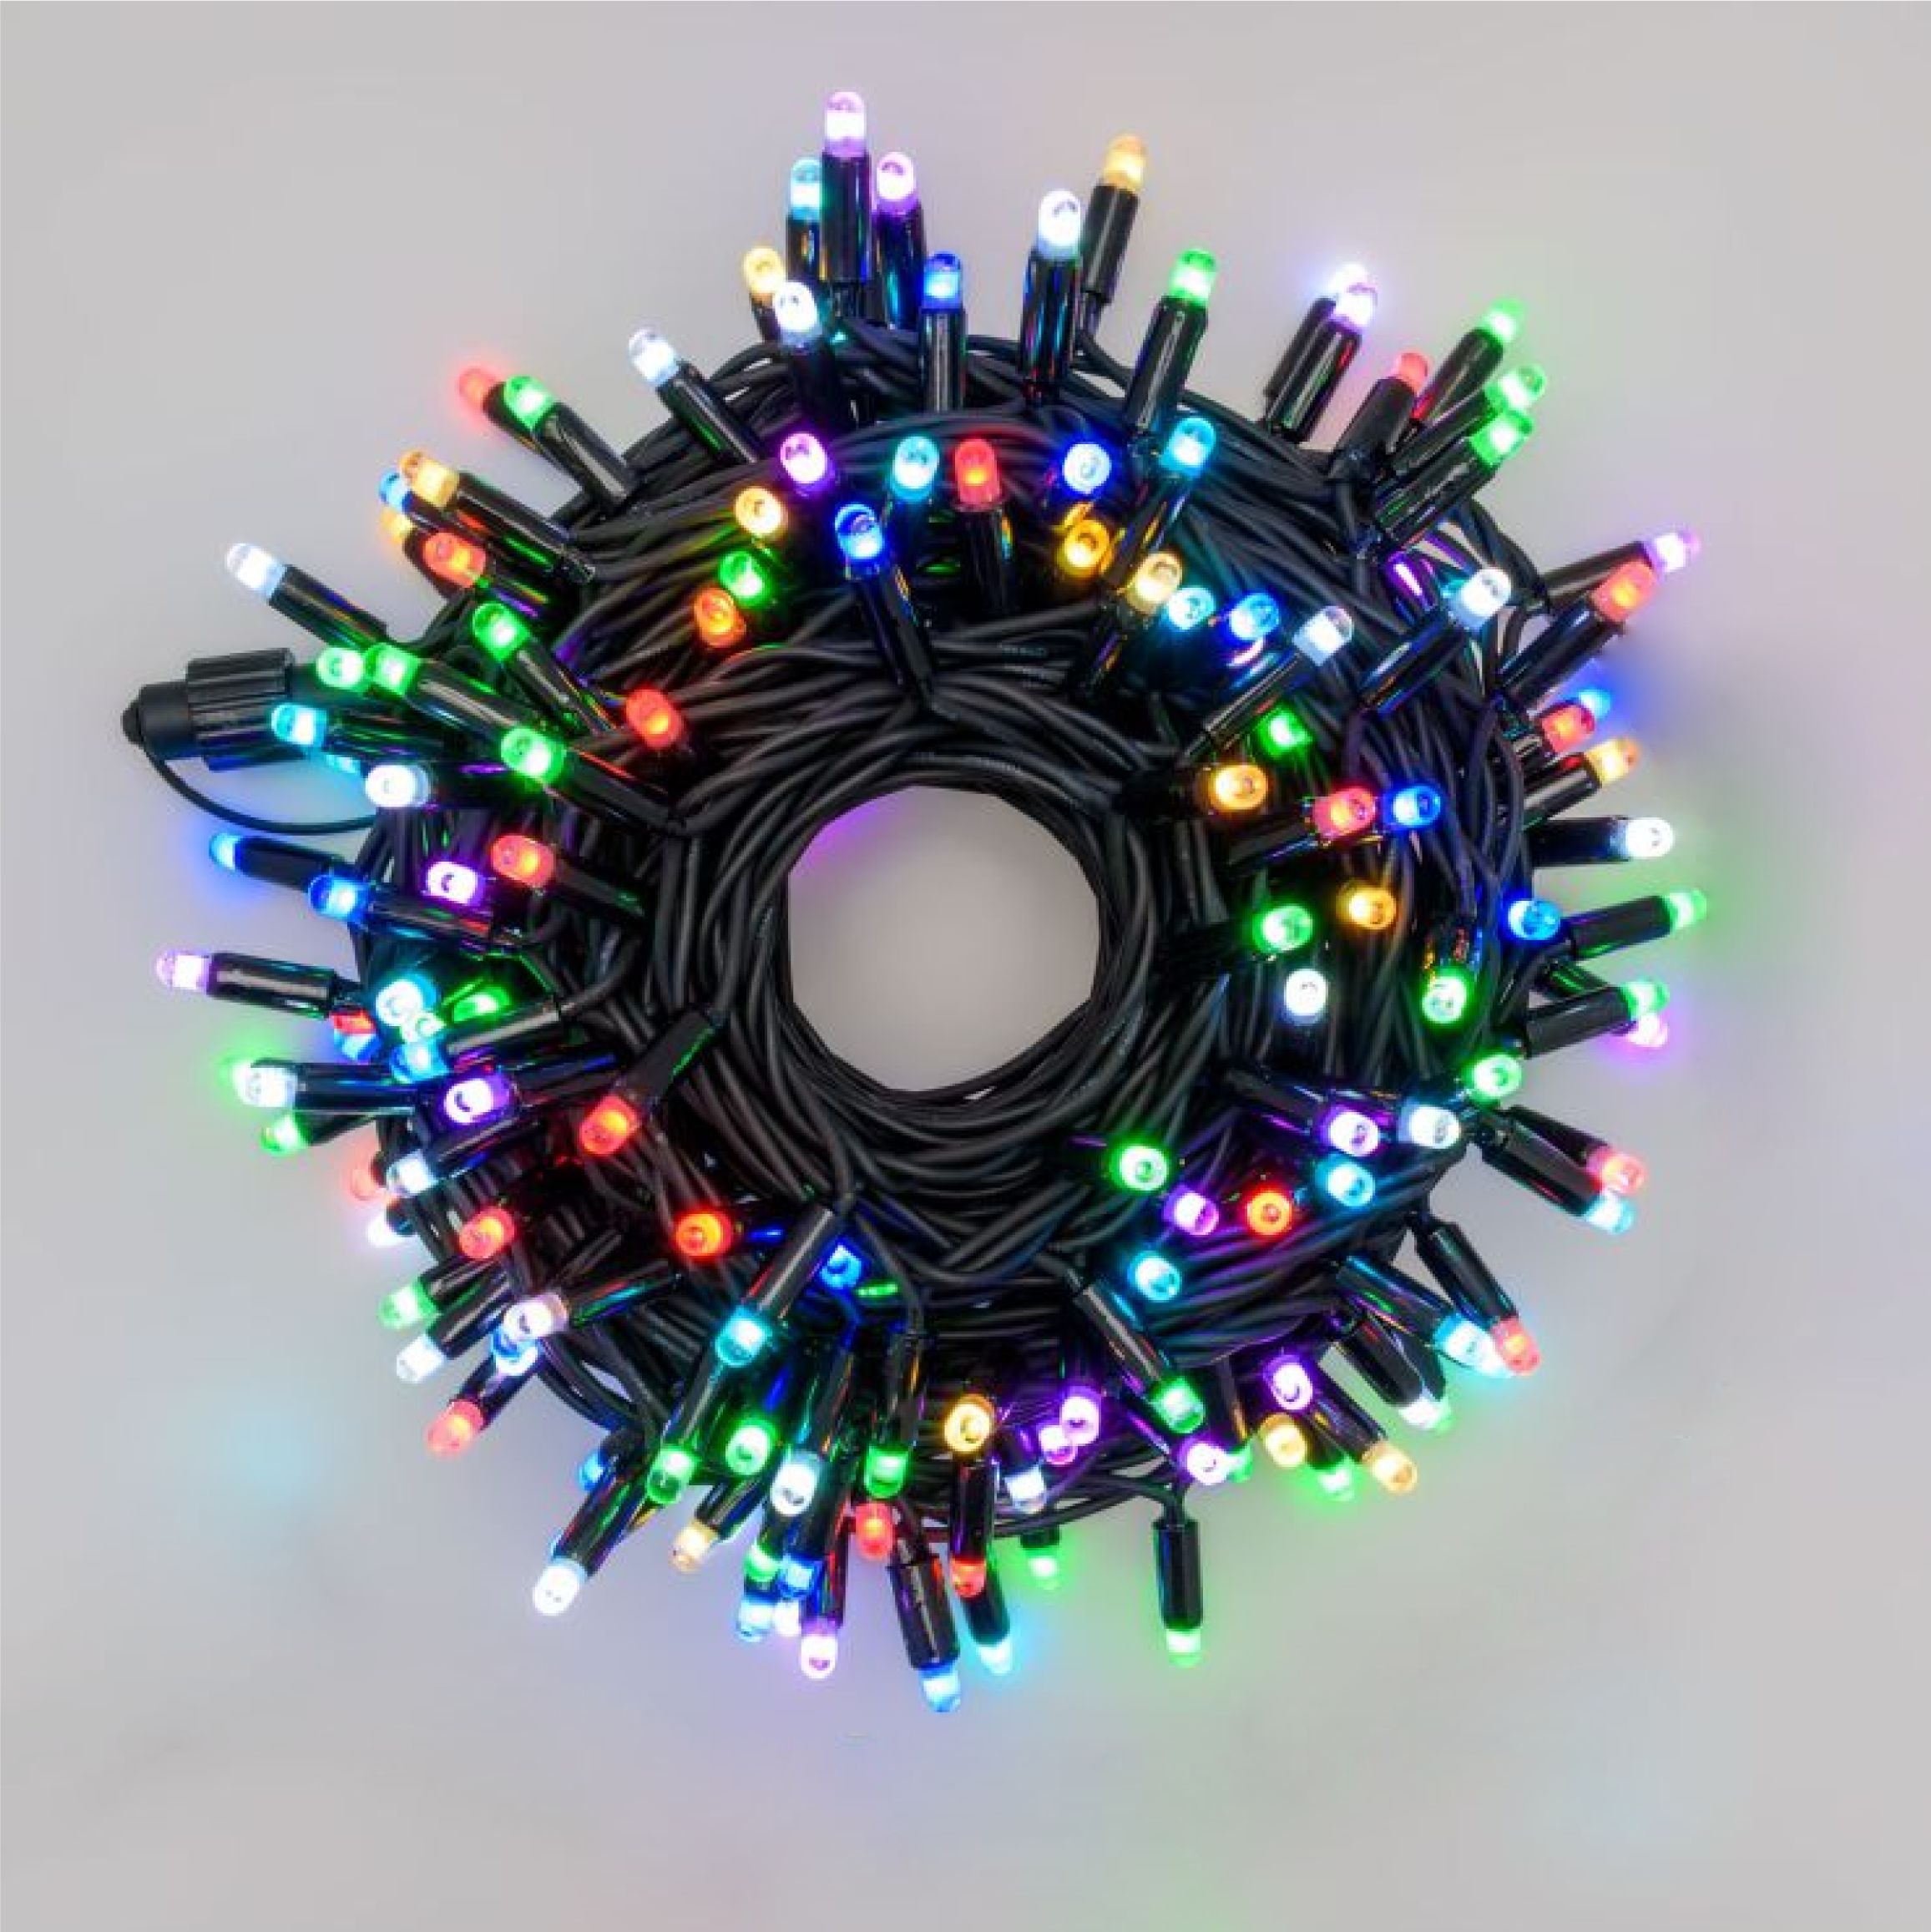 Välis- ja siseruumides kasutatav valguskett(LED tuled) 100 m PROLED RGB